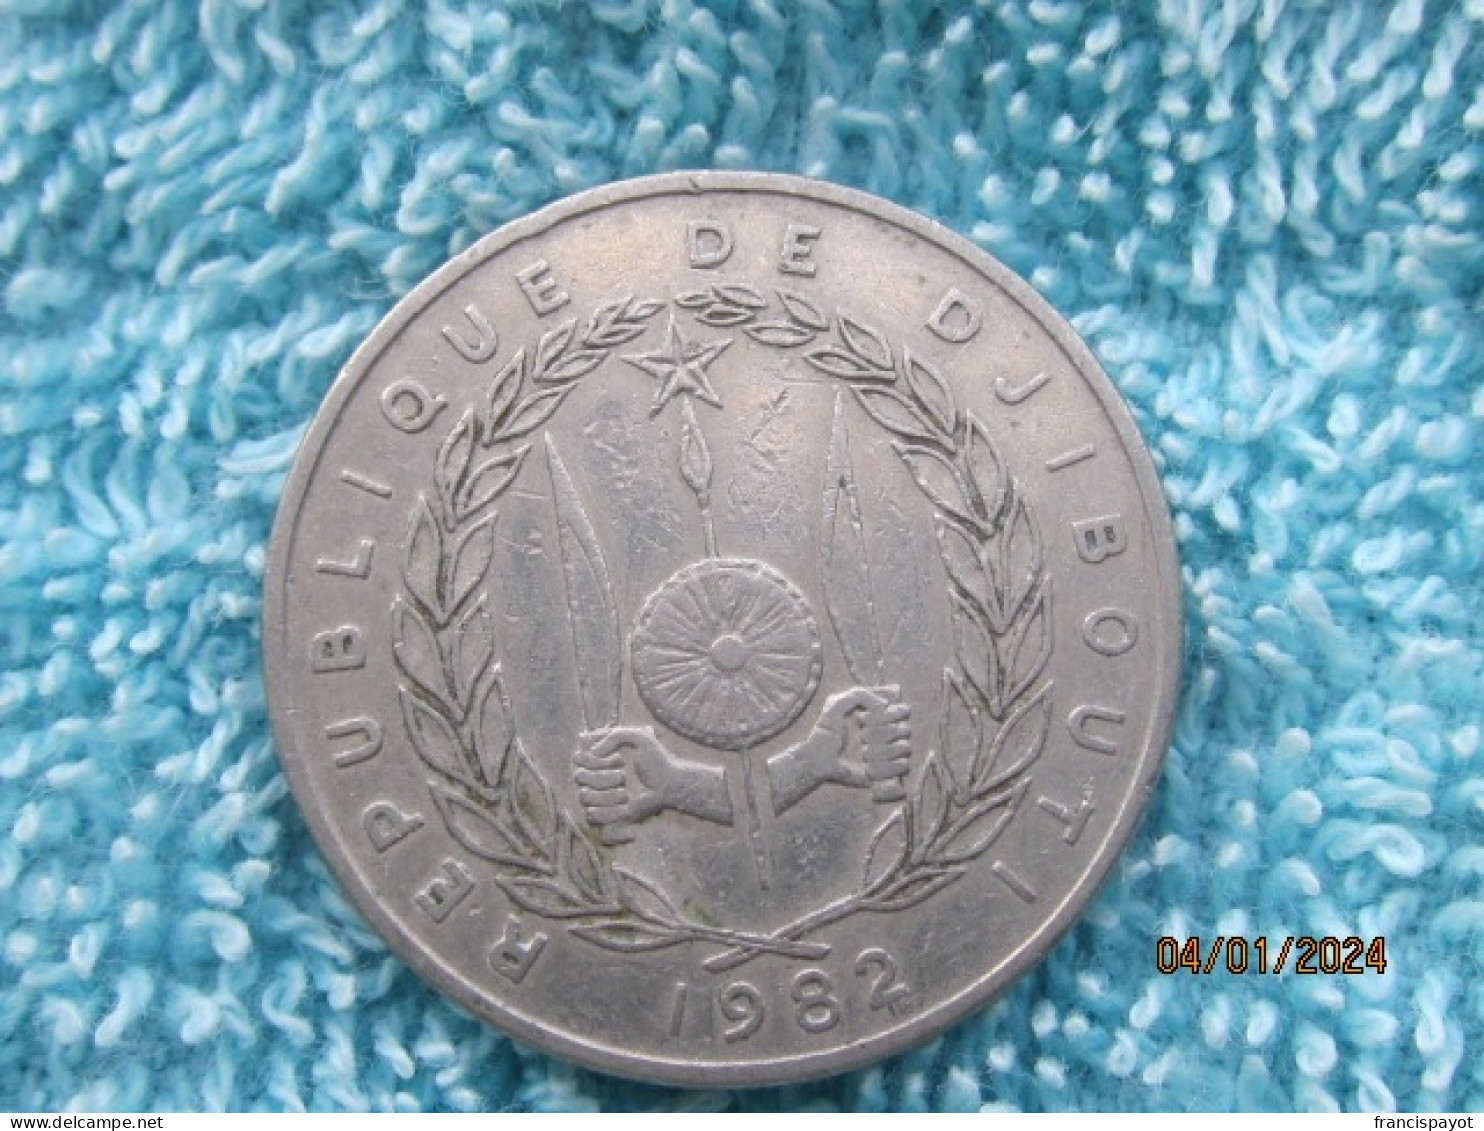 Djibouti: 50 Francs FDj 1982 - Djibouti